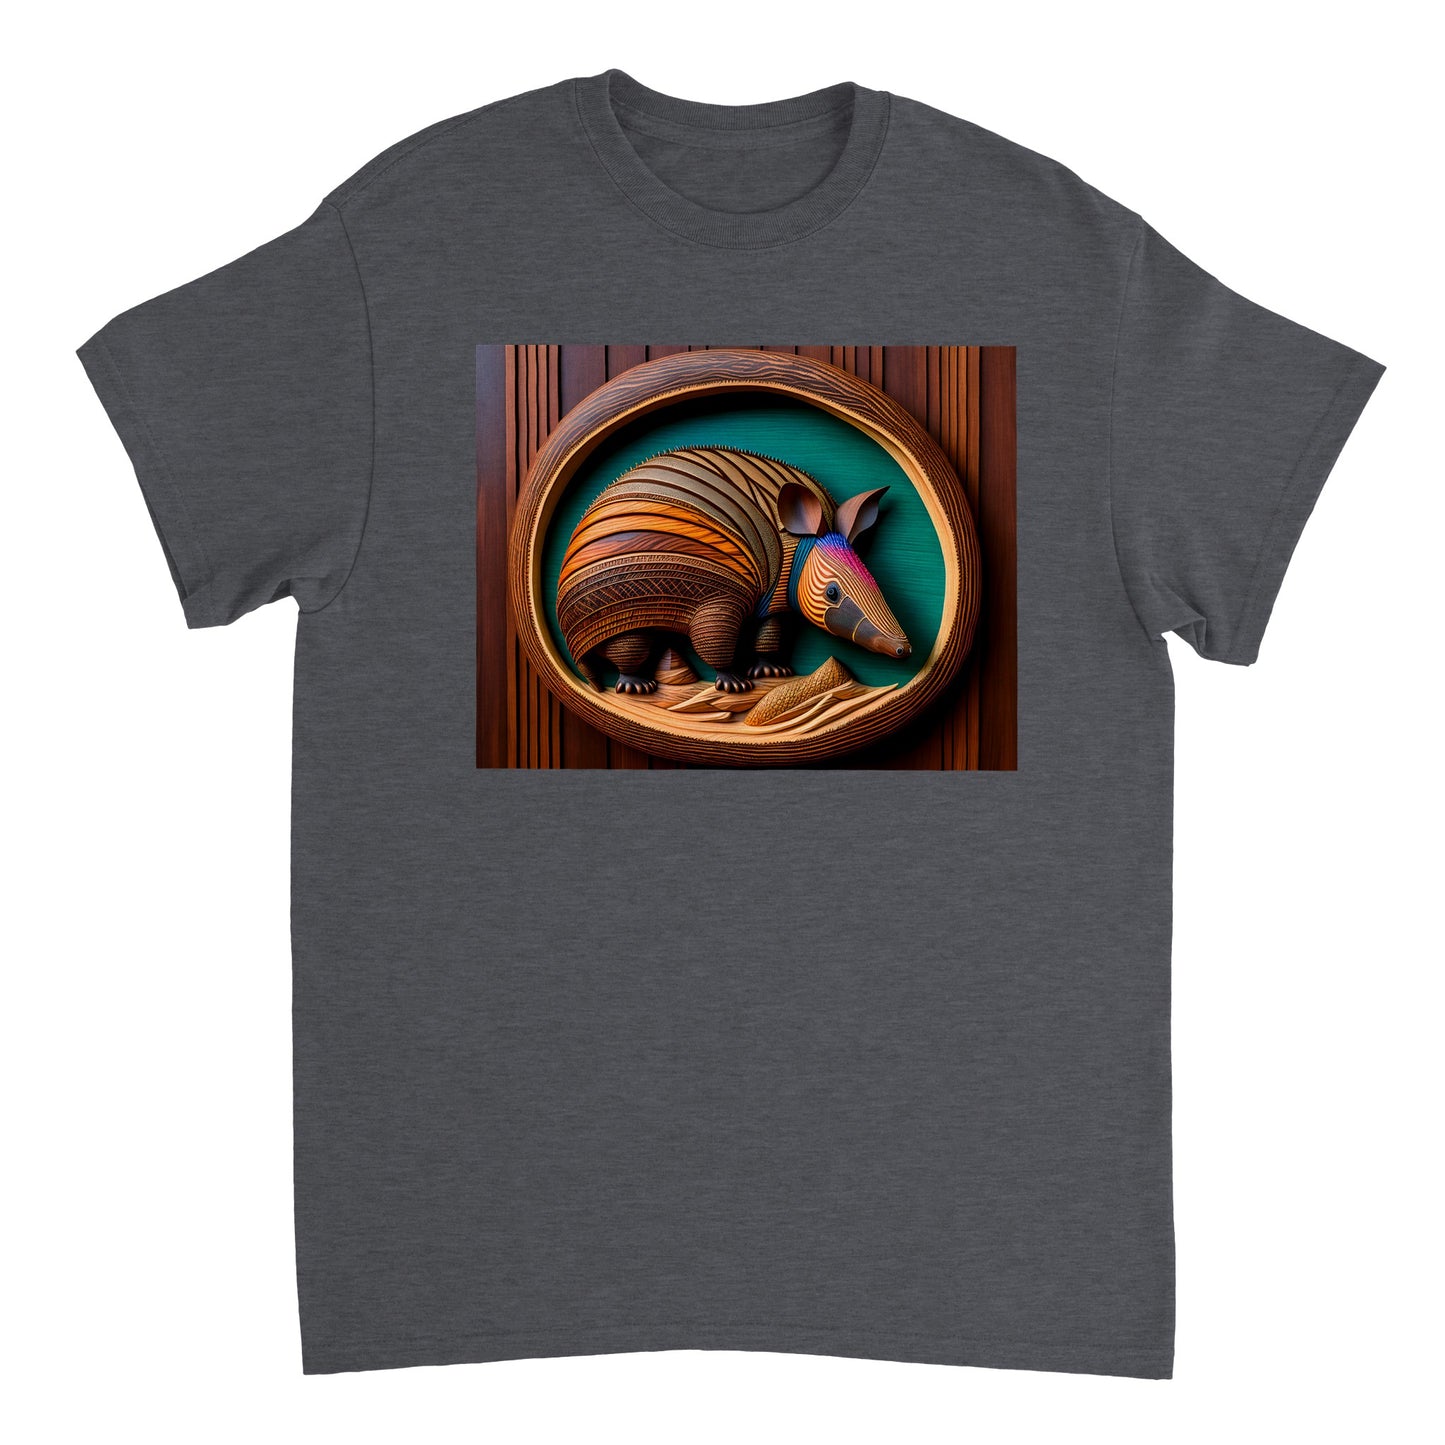 3D Wooden Animal Art - Heavyweight Unisex Crewneck T-shirt 50